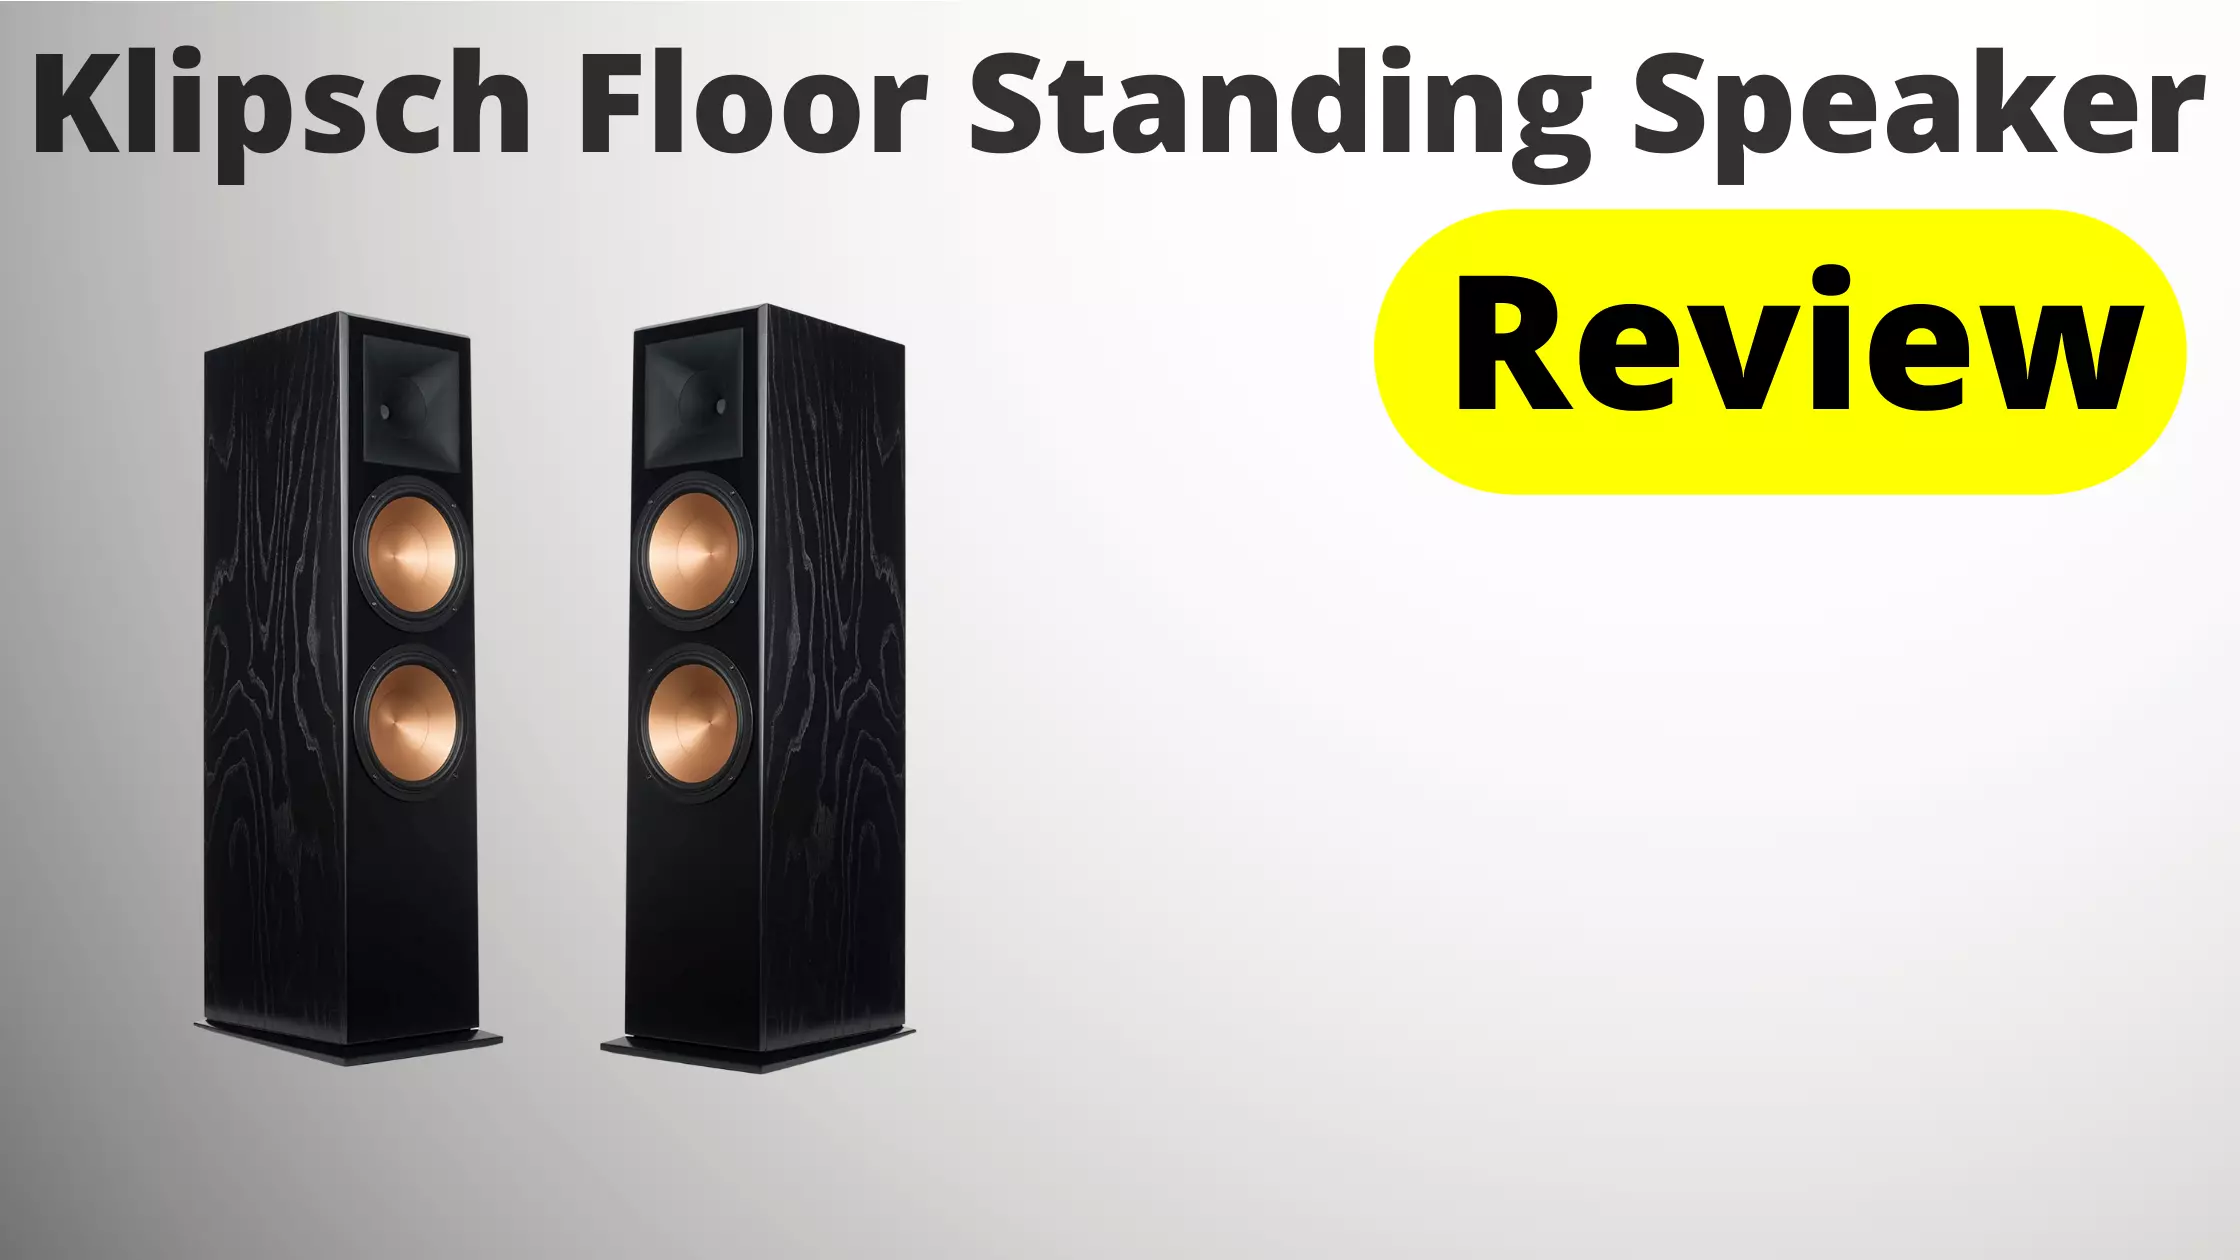 Klipsch Floor Standing Speaker Review - Expert's Reviews 2022